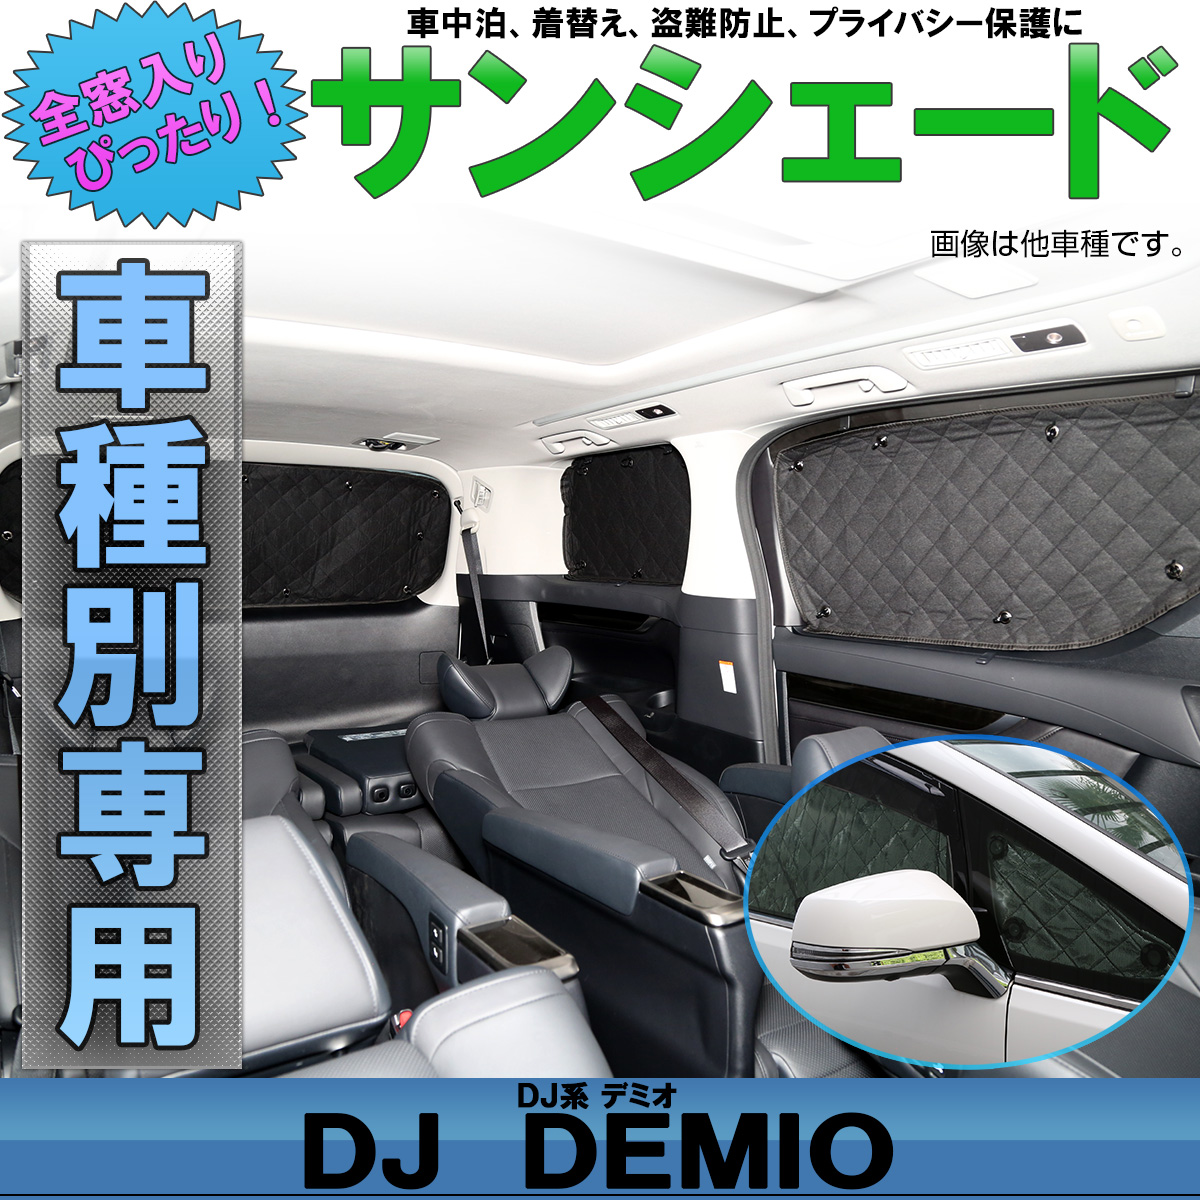 Dj系 デミオ Dj3 Dj5 専用設計 サンシェード 全窓用セット 5層構造 ブラックメッシュ 車中泊 プライバシー保護に S 8